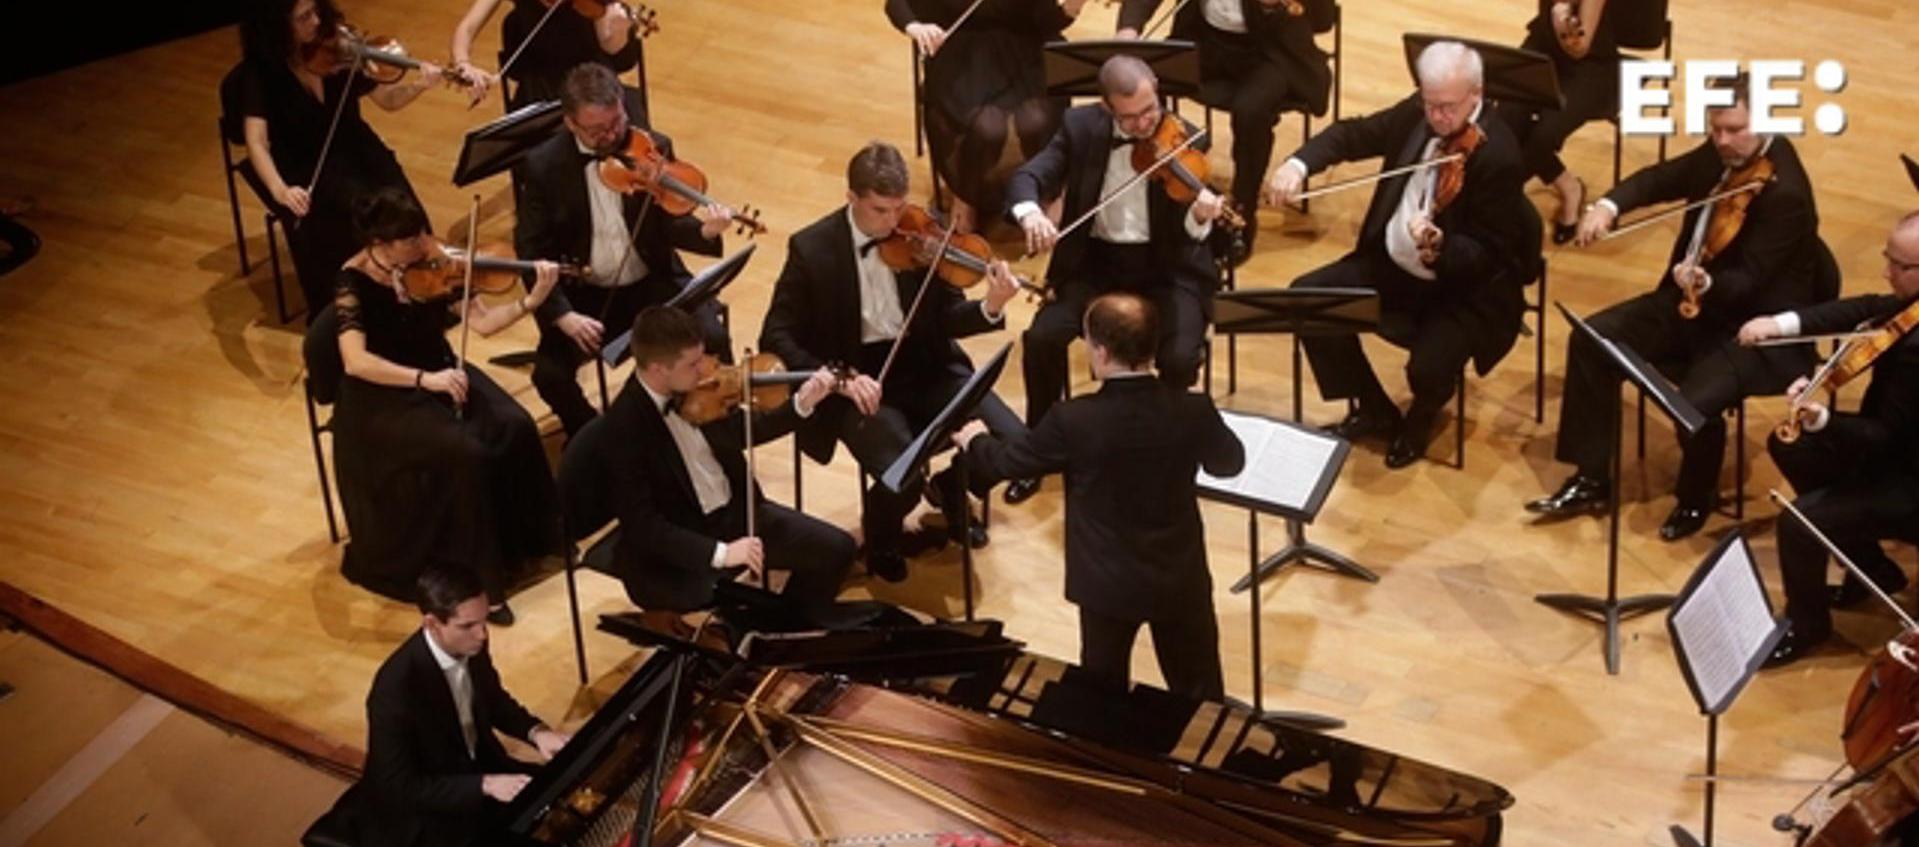 La Orquesta de Cámara de Praga, bajo la dirección del checoslovaco Zbynêk Müller, interpreta el concierto inaugural del Festival Internacional de Música de Cartagena.